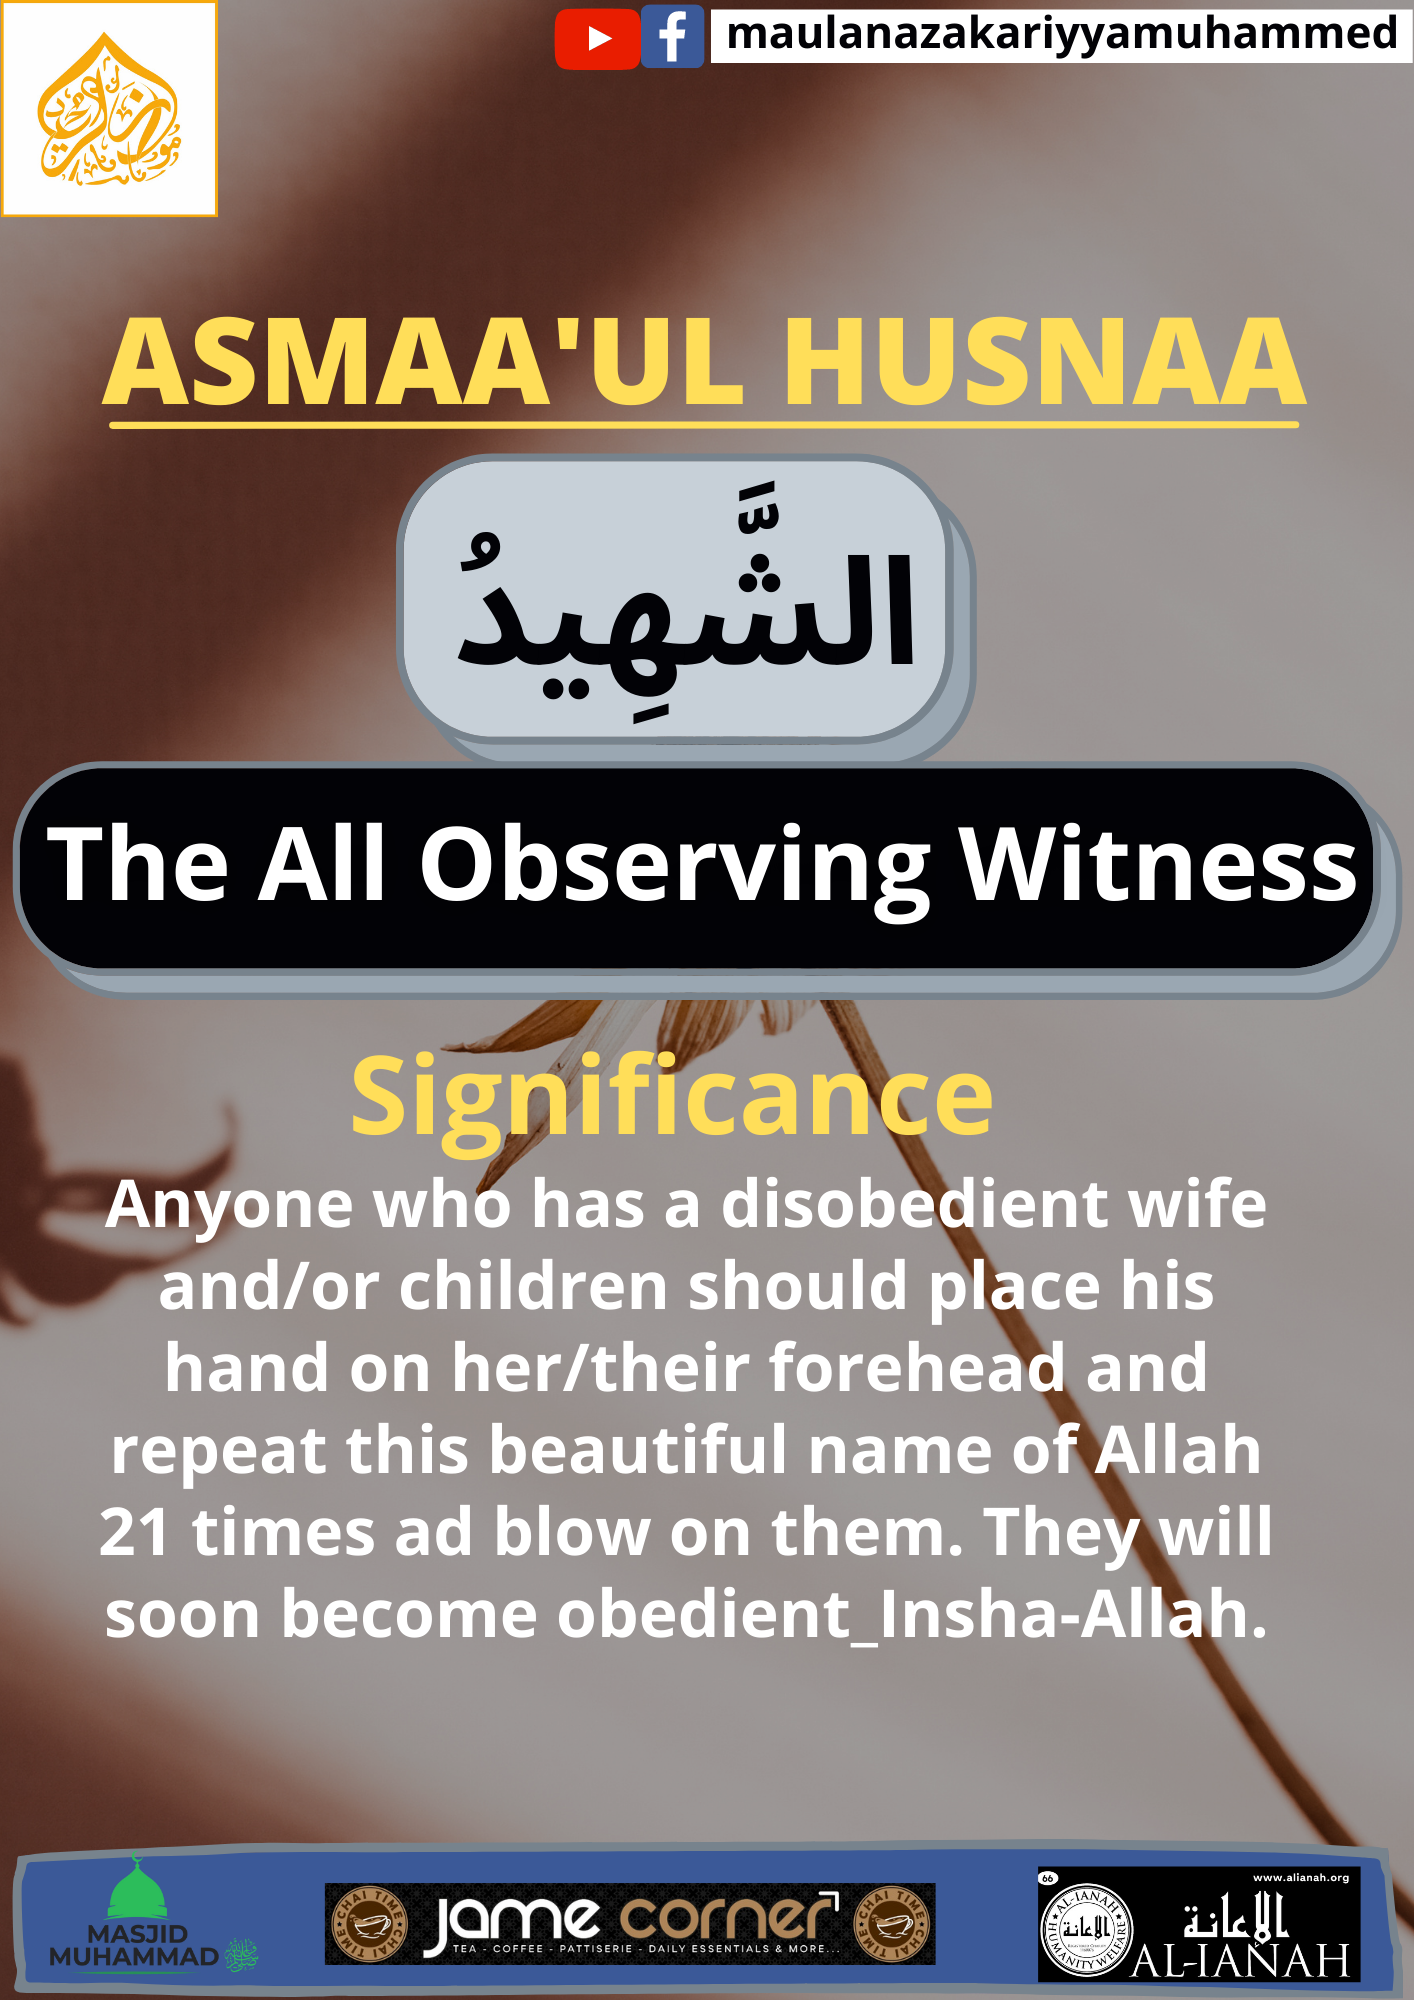 ASMAA’UL HUSNAA (ASH-SHAHEED)